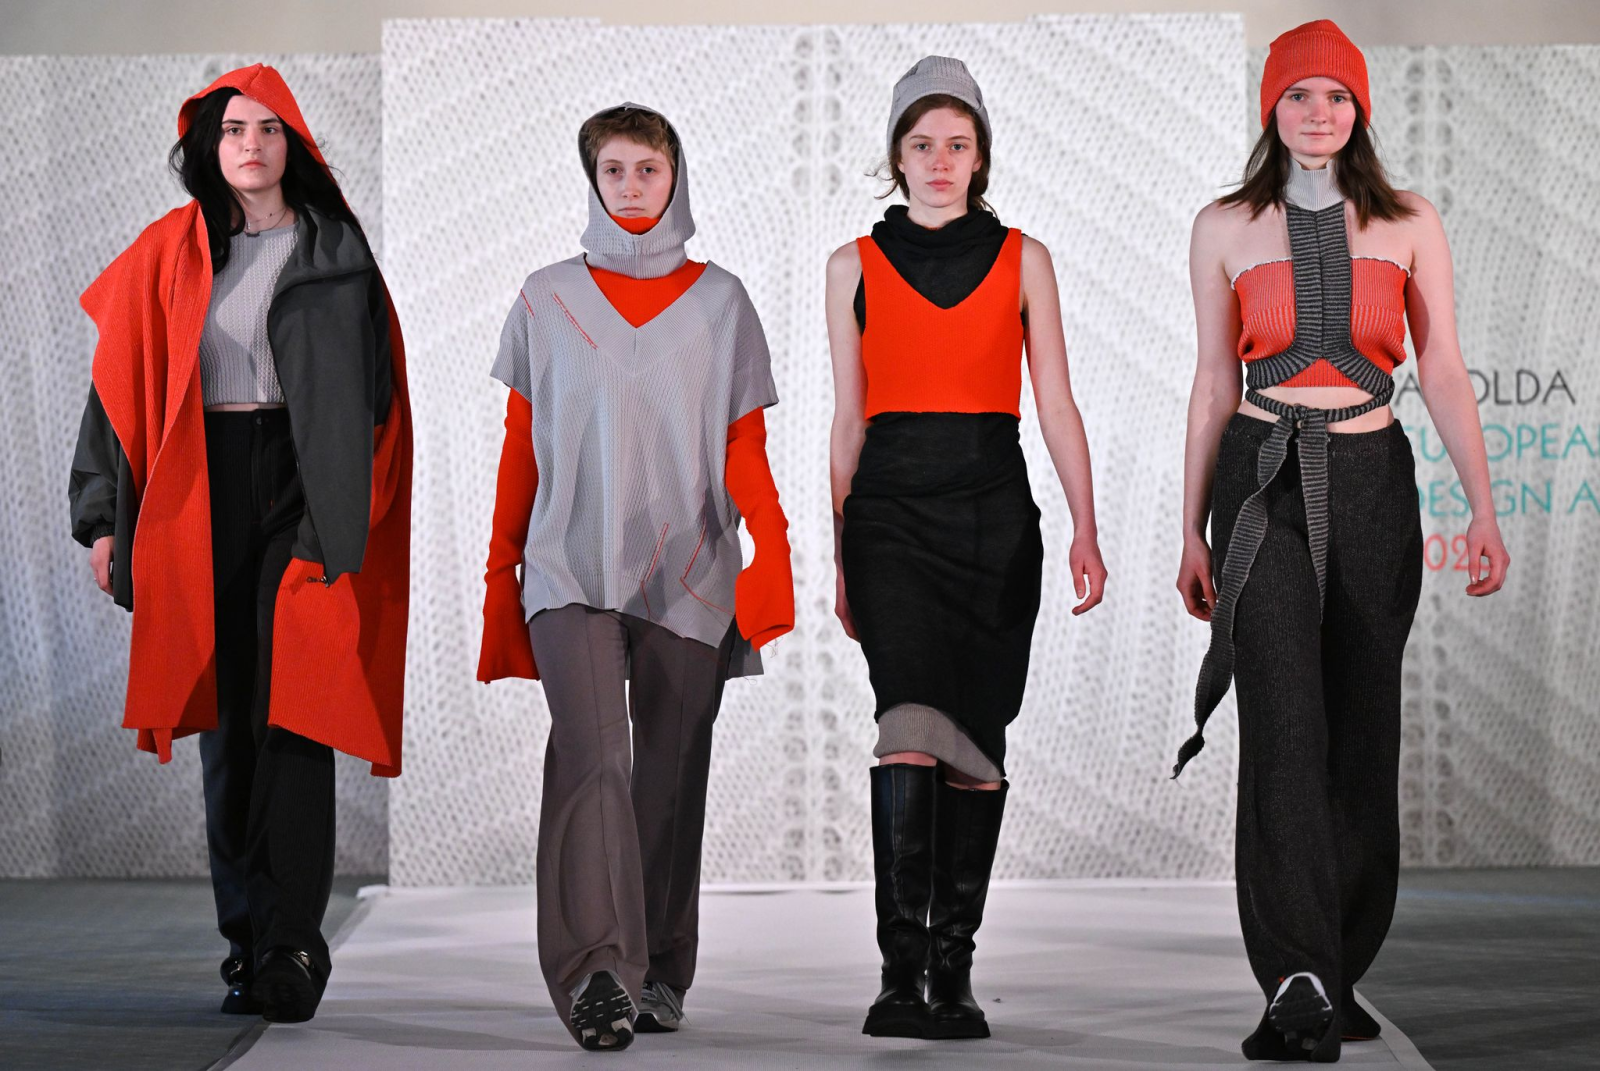 Models zeigen Entwürfe der Designerin Michelle Klein von der Hochschule Trier bei einer Modenschau.